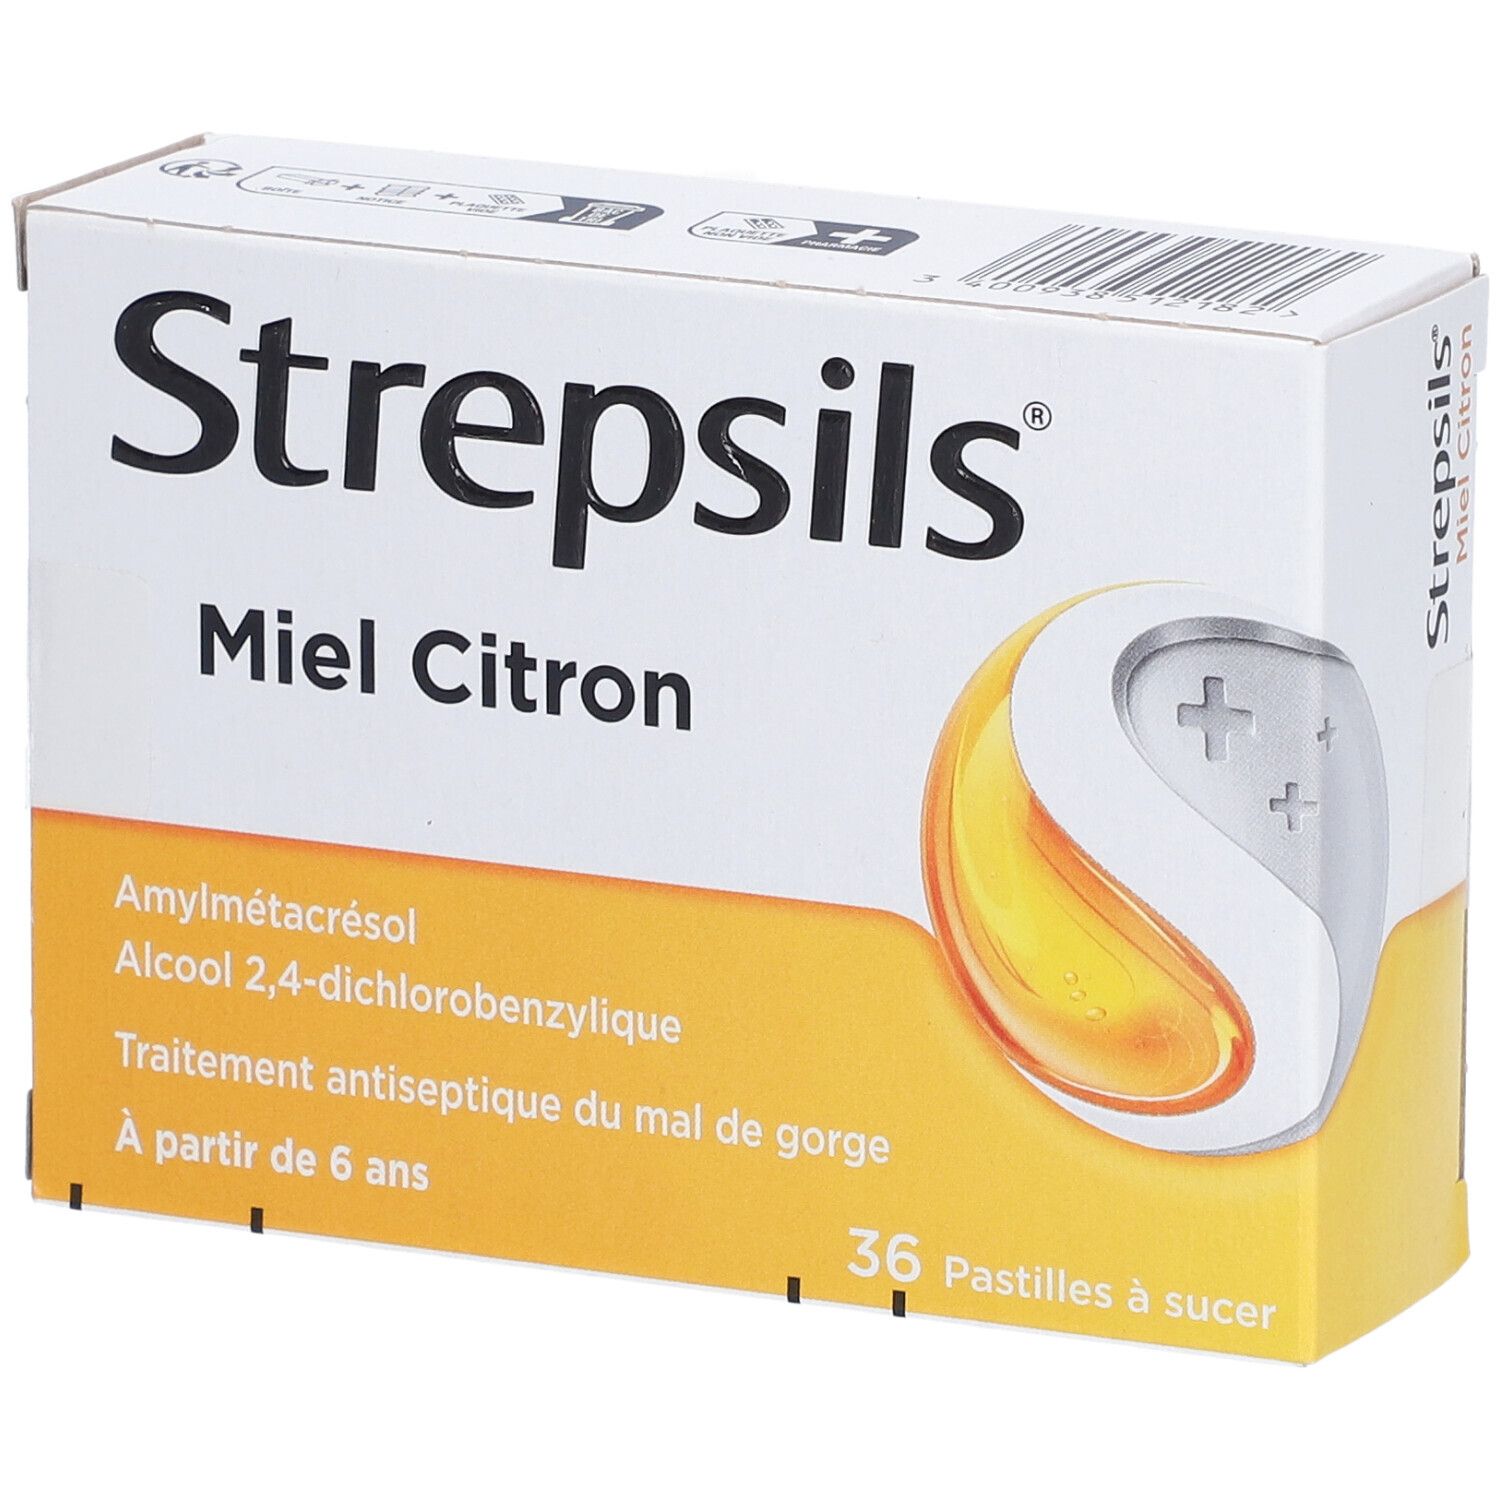 Strepsils Miel Citron│Strepsils